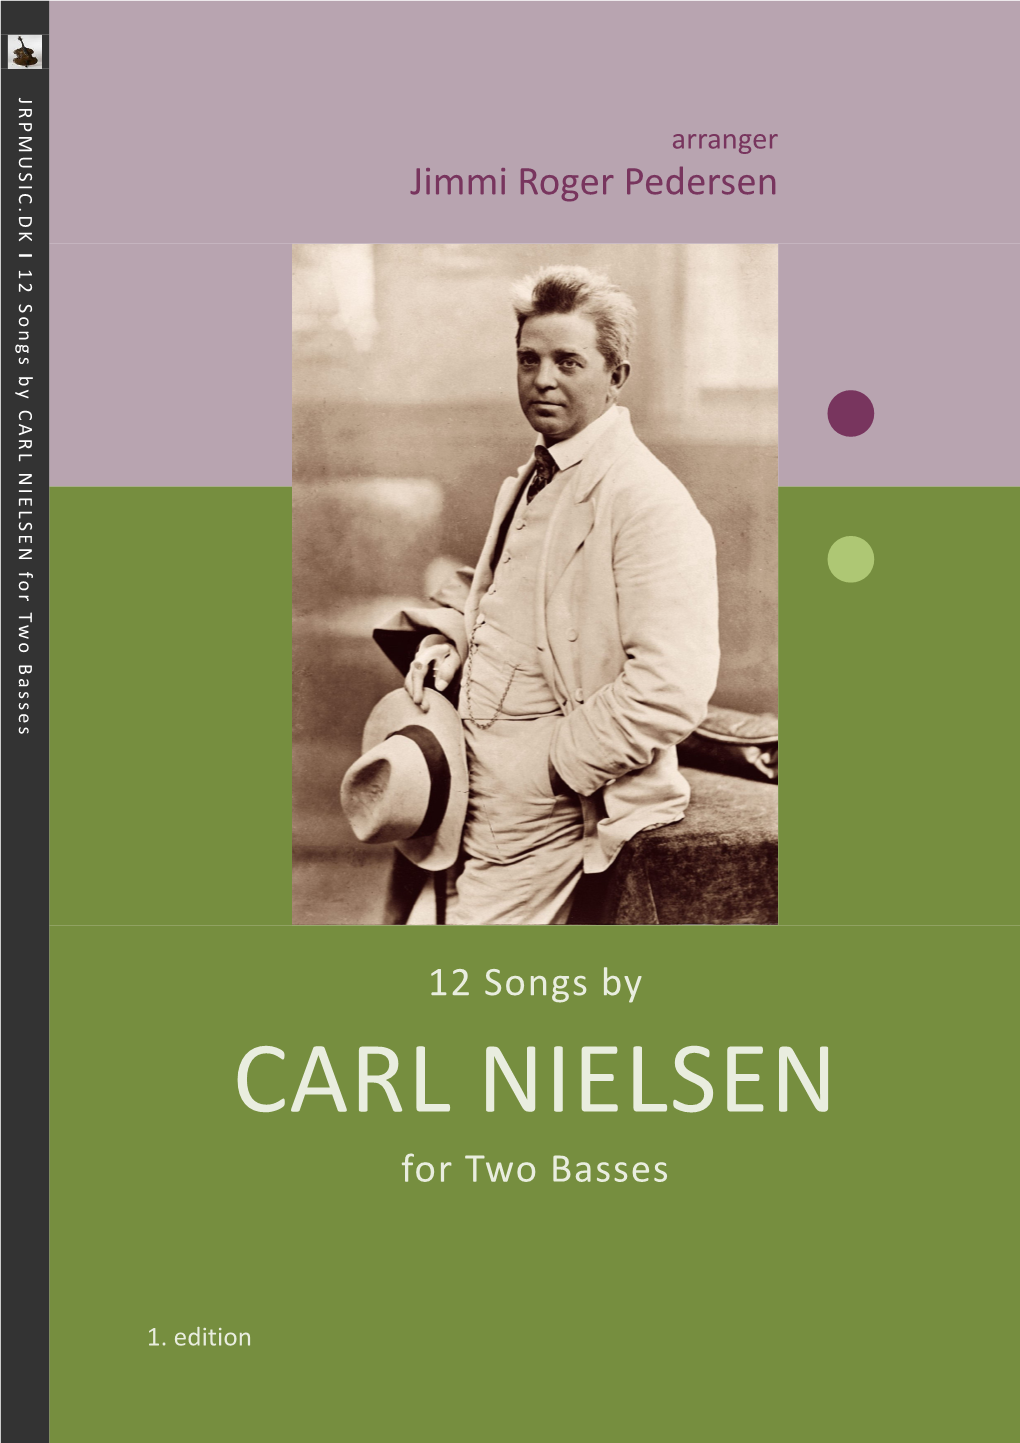 CARL NIELSEN for Two Basses